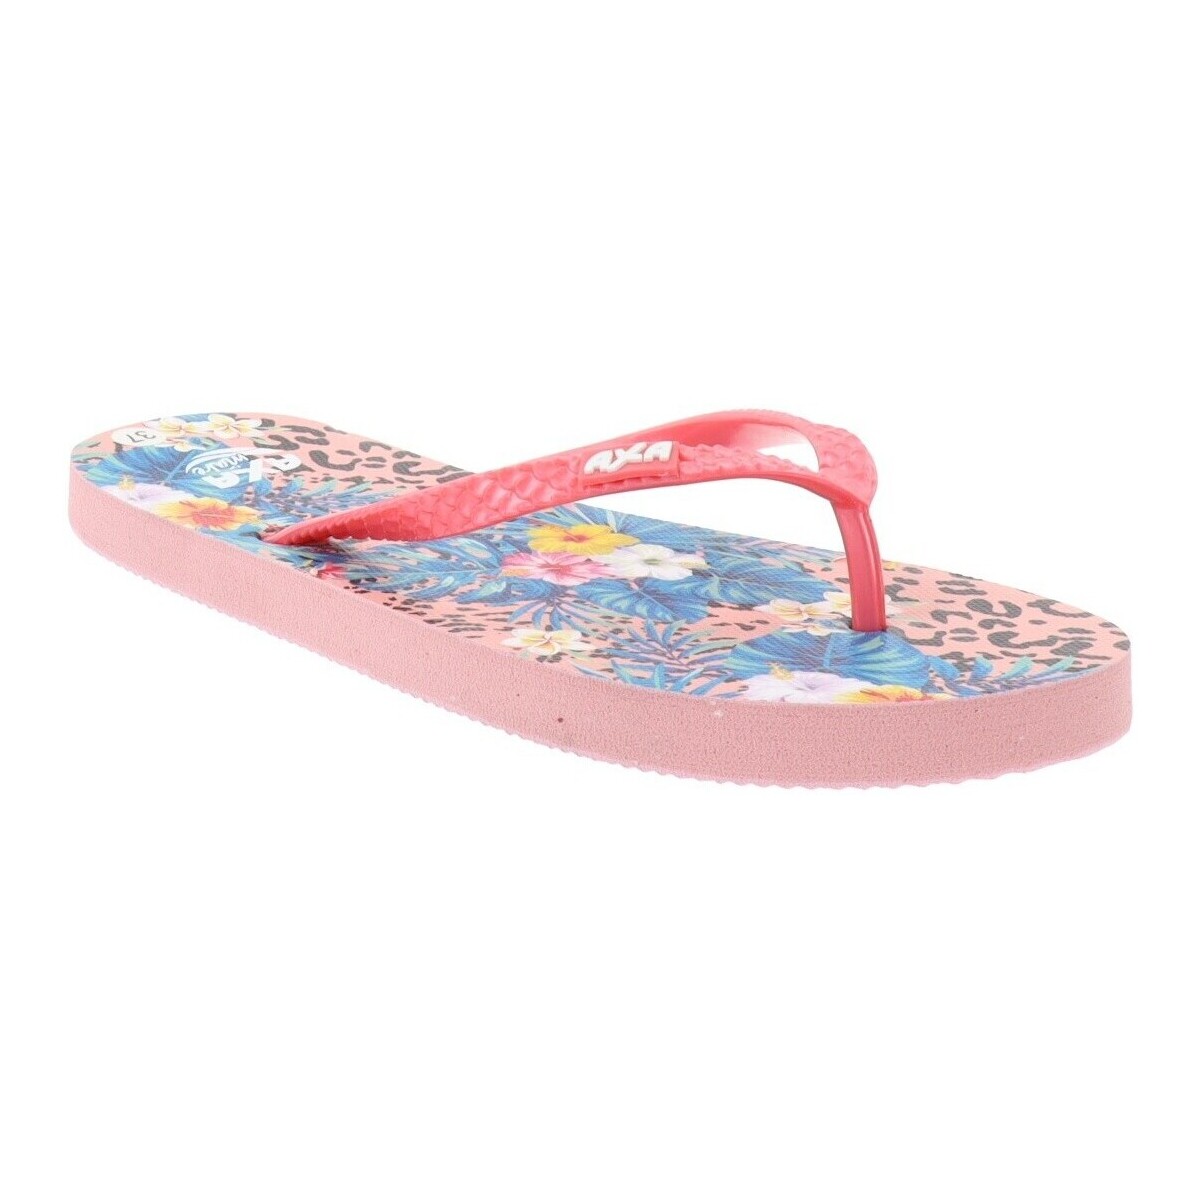 Schoenen Dames Leren slippers Axa -73693A Roze